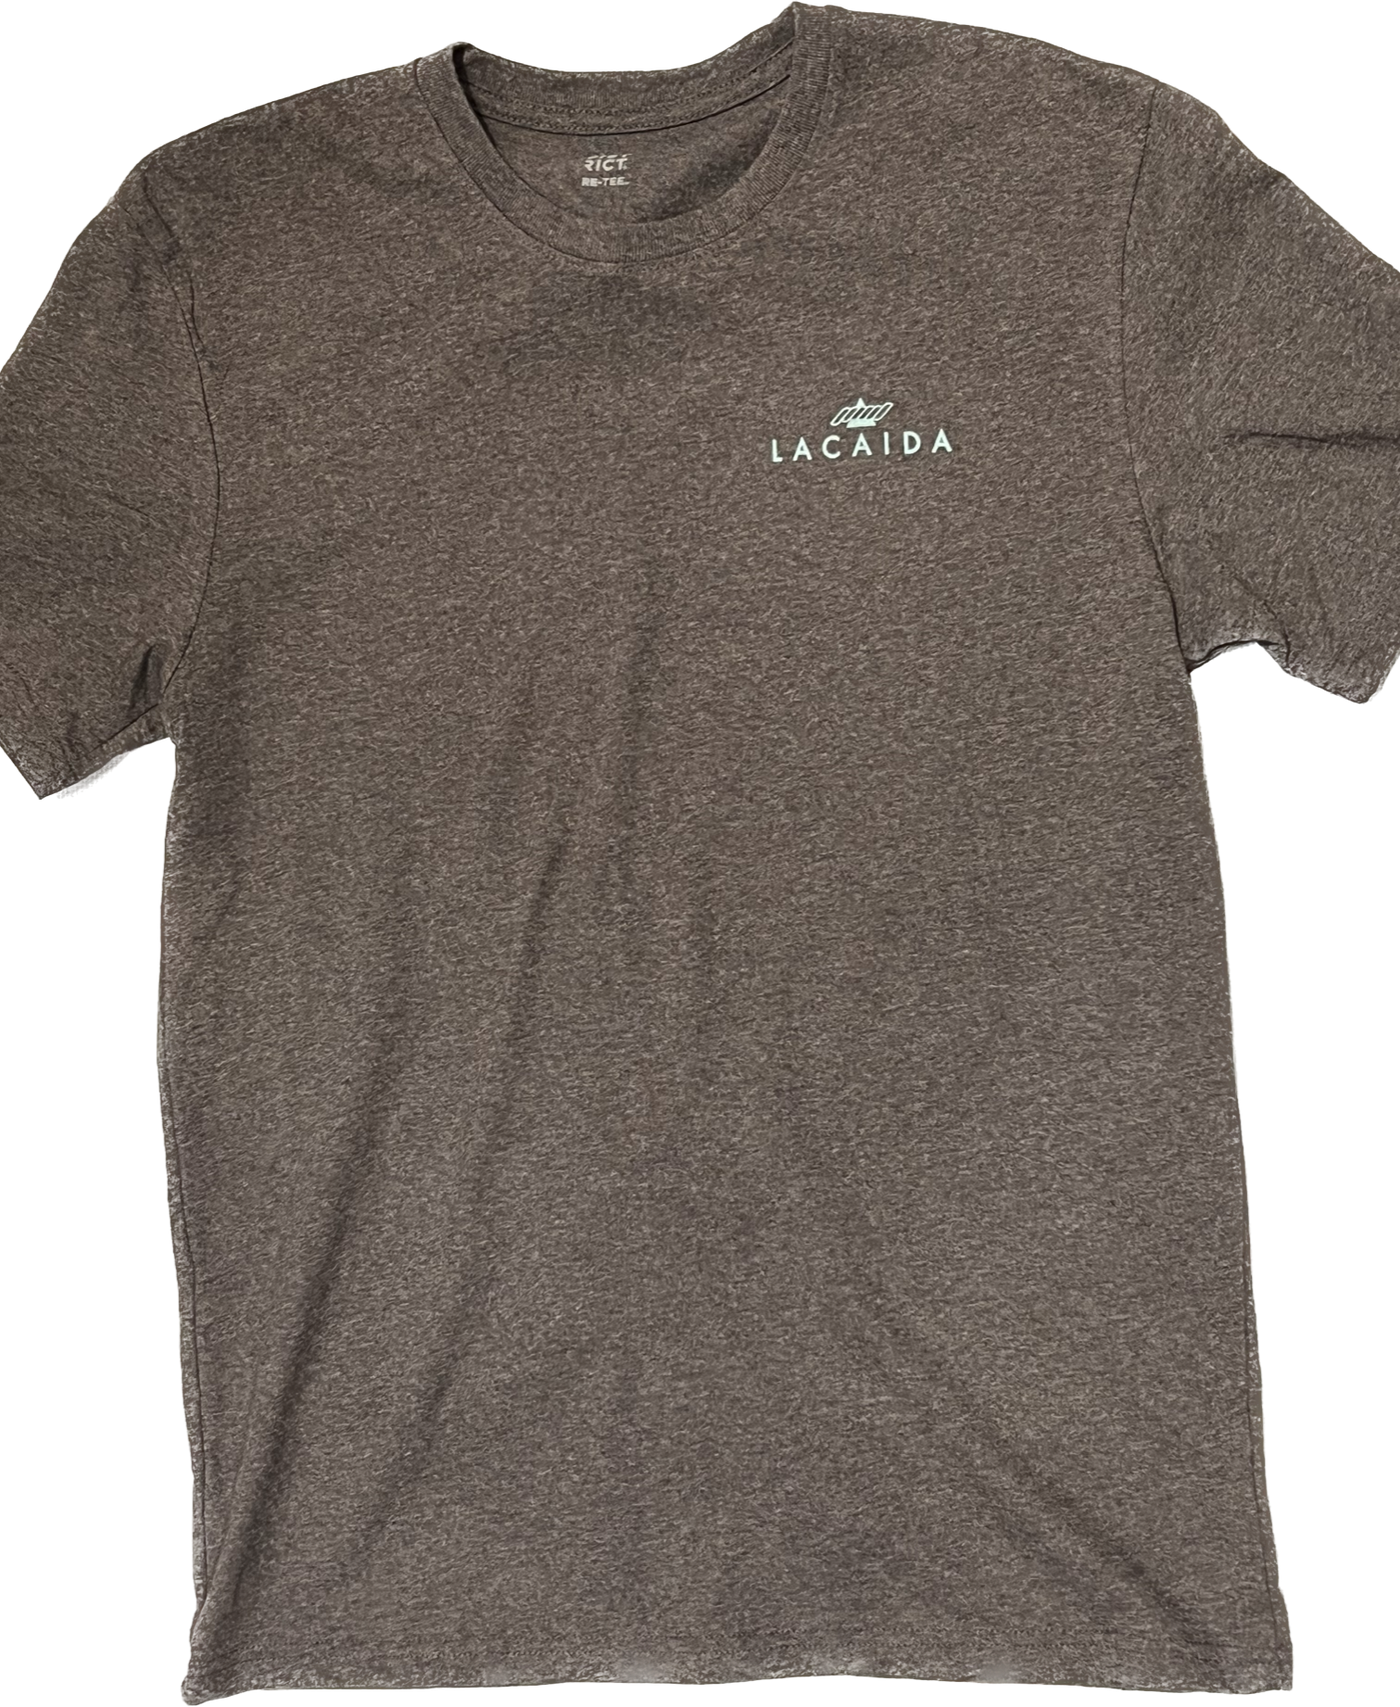 Indian Creek short sleeve t-shirt